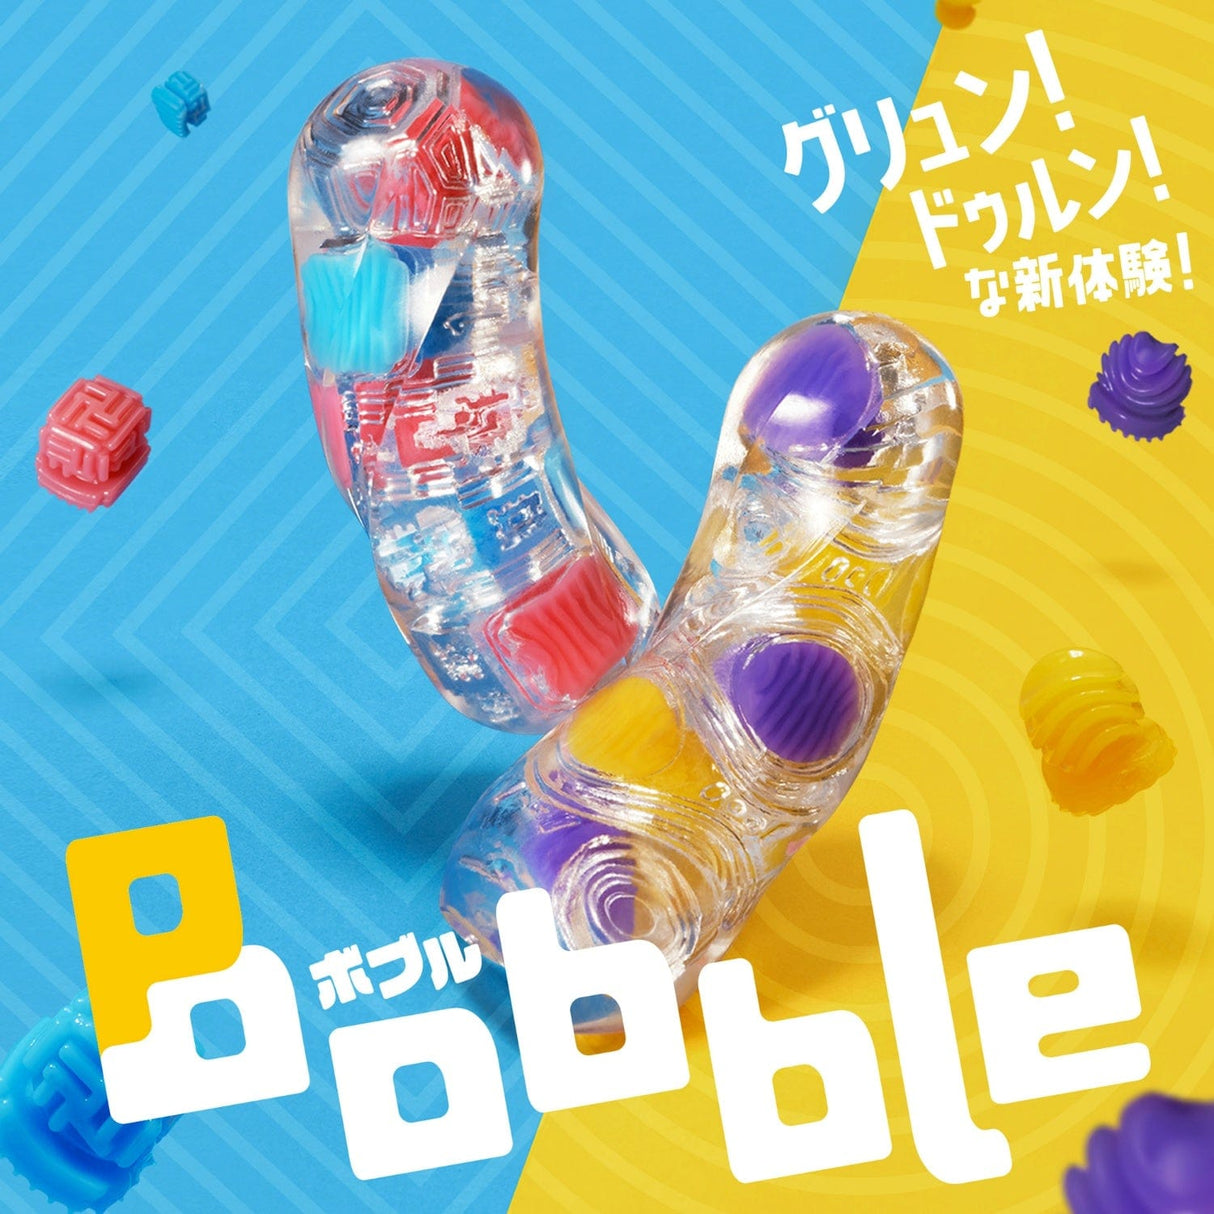 Tenga - Bobble Crazy Cubes Masturbator Soft Stroker (Blue) TE1201 CherryAffairs